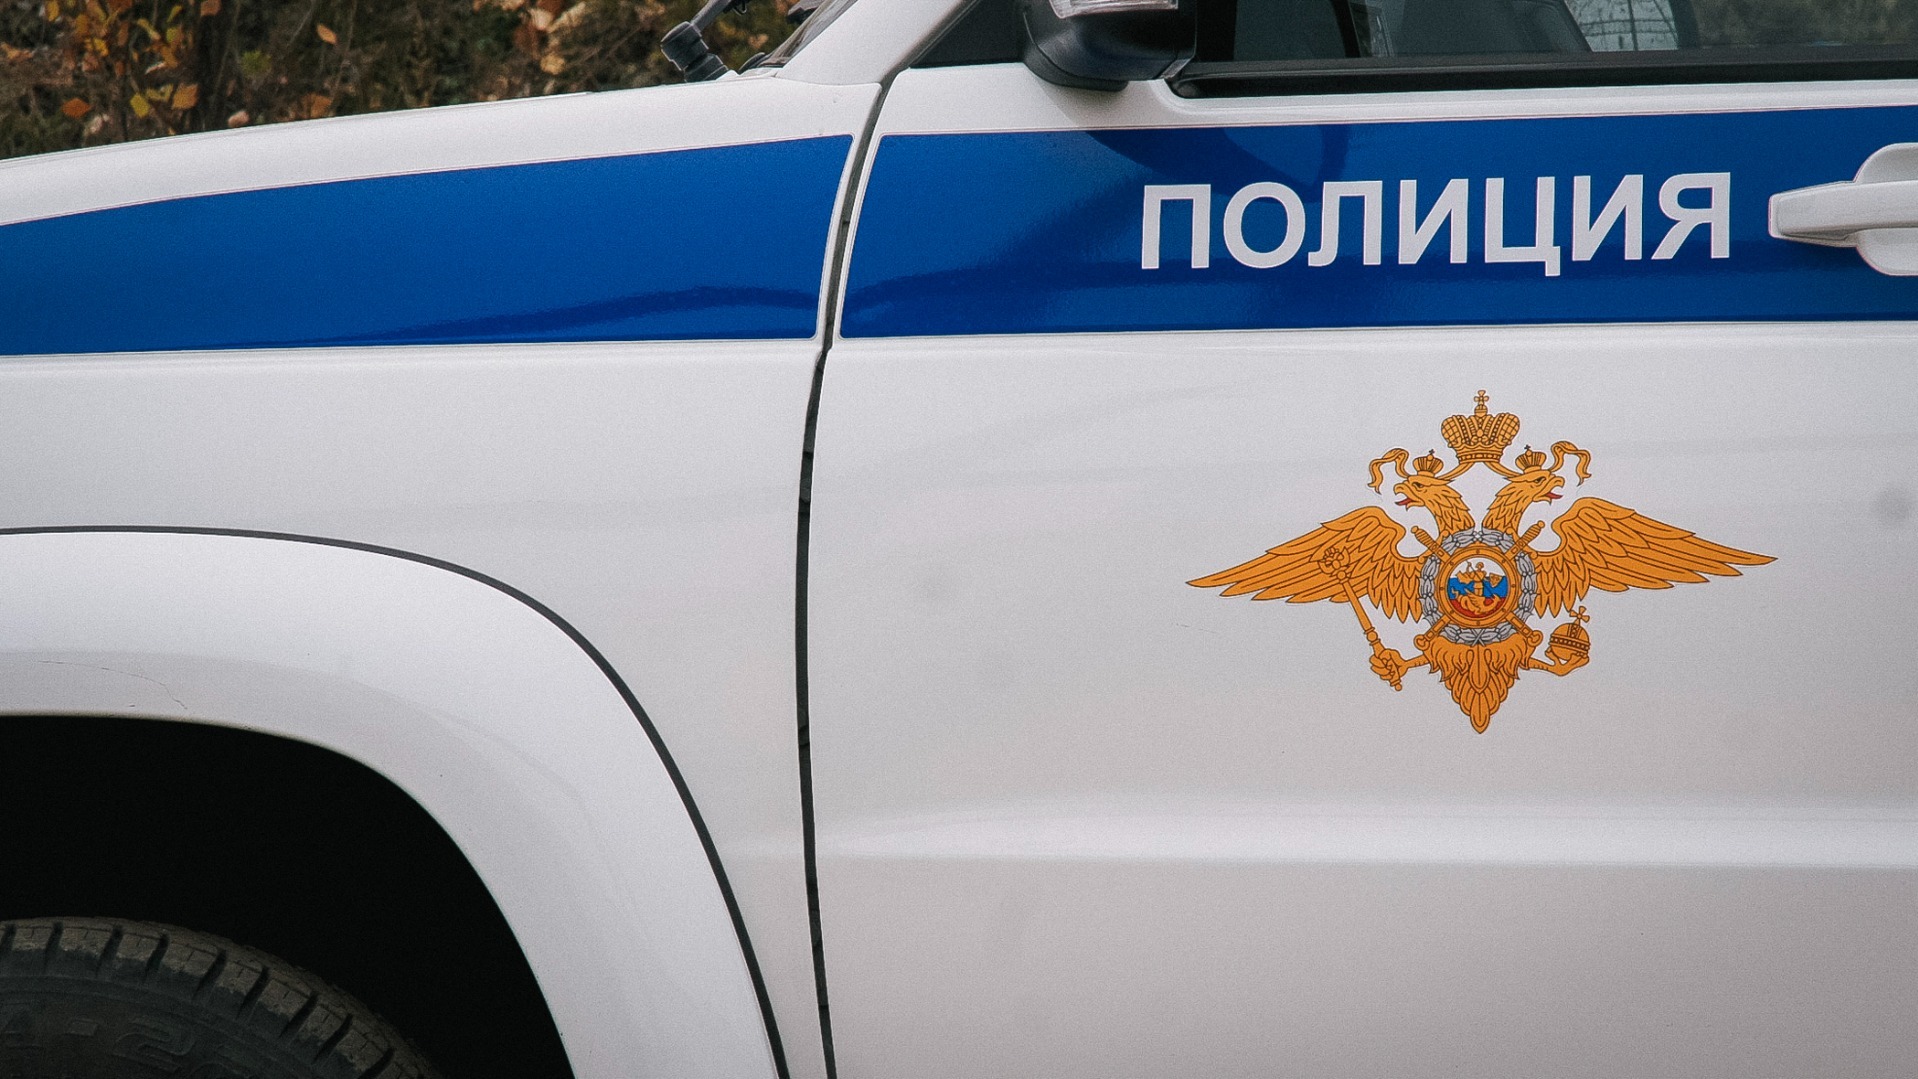 Неизвестный застрелил девушку во дворе жилого комплекса в Екатеринбурге